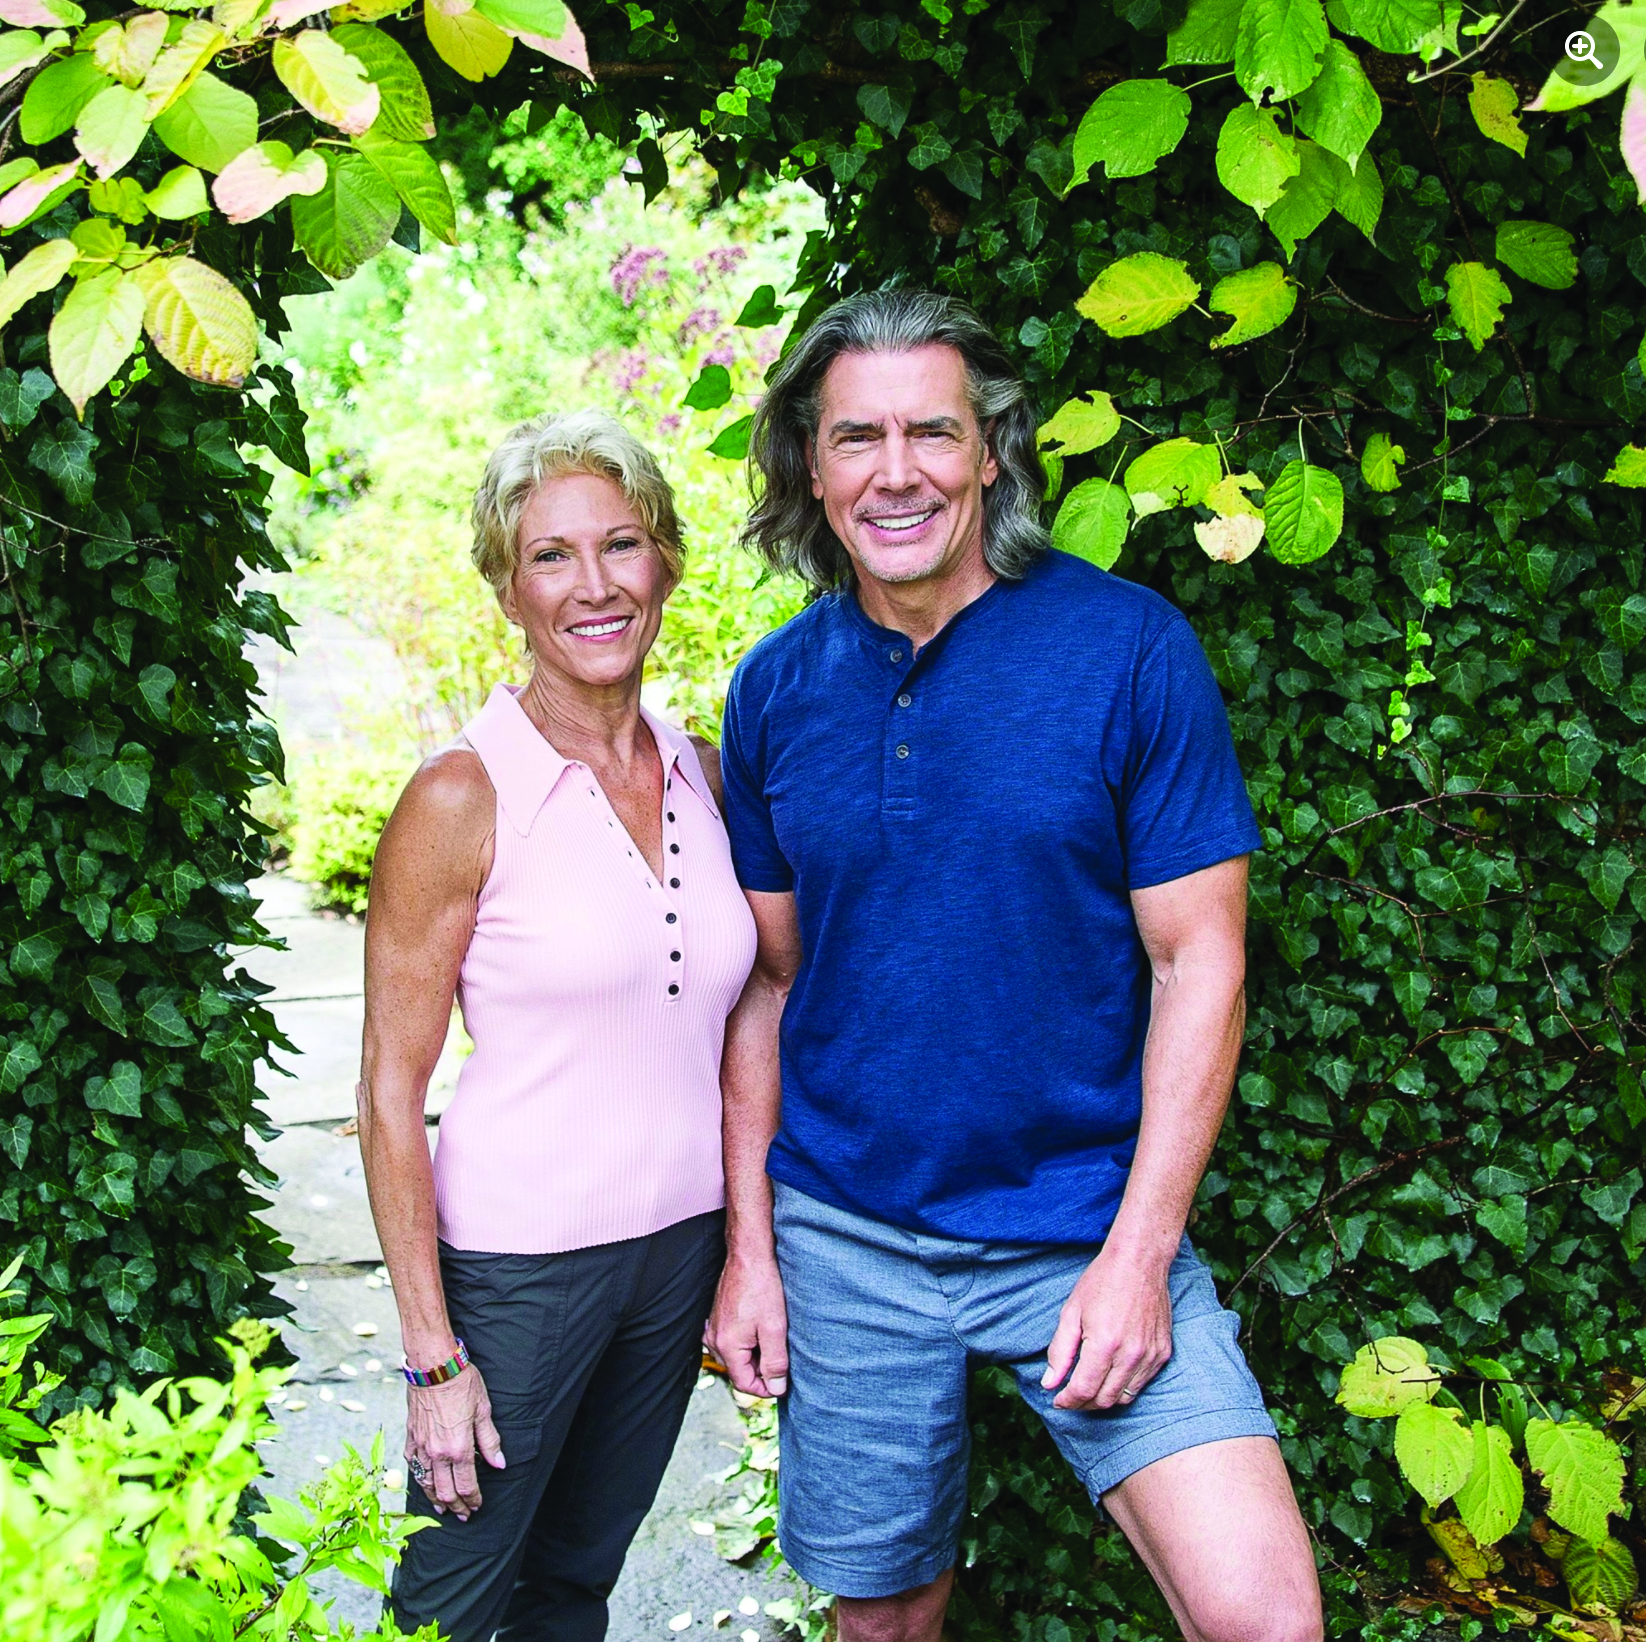 Expert Gardener Madeline Hooper and Fitness Trainer Jeff Hughes